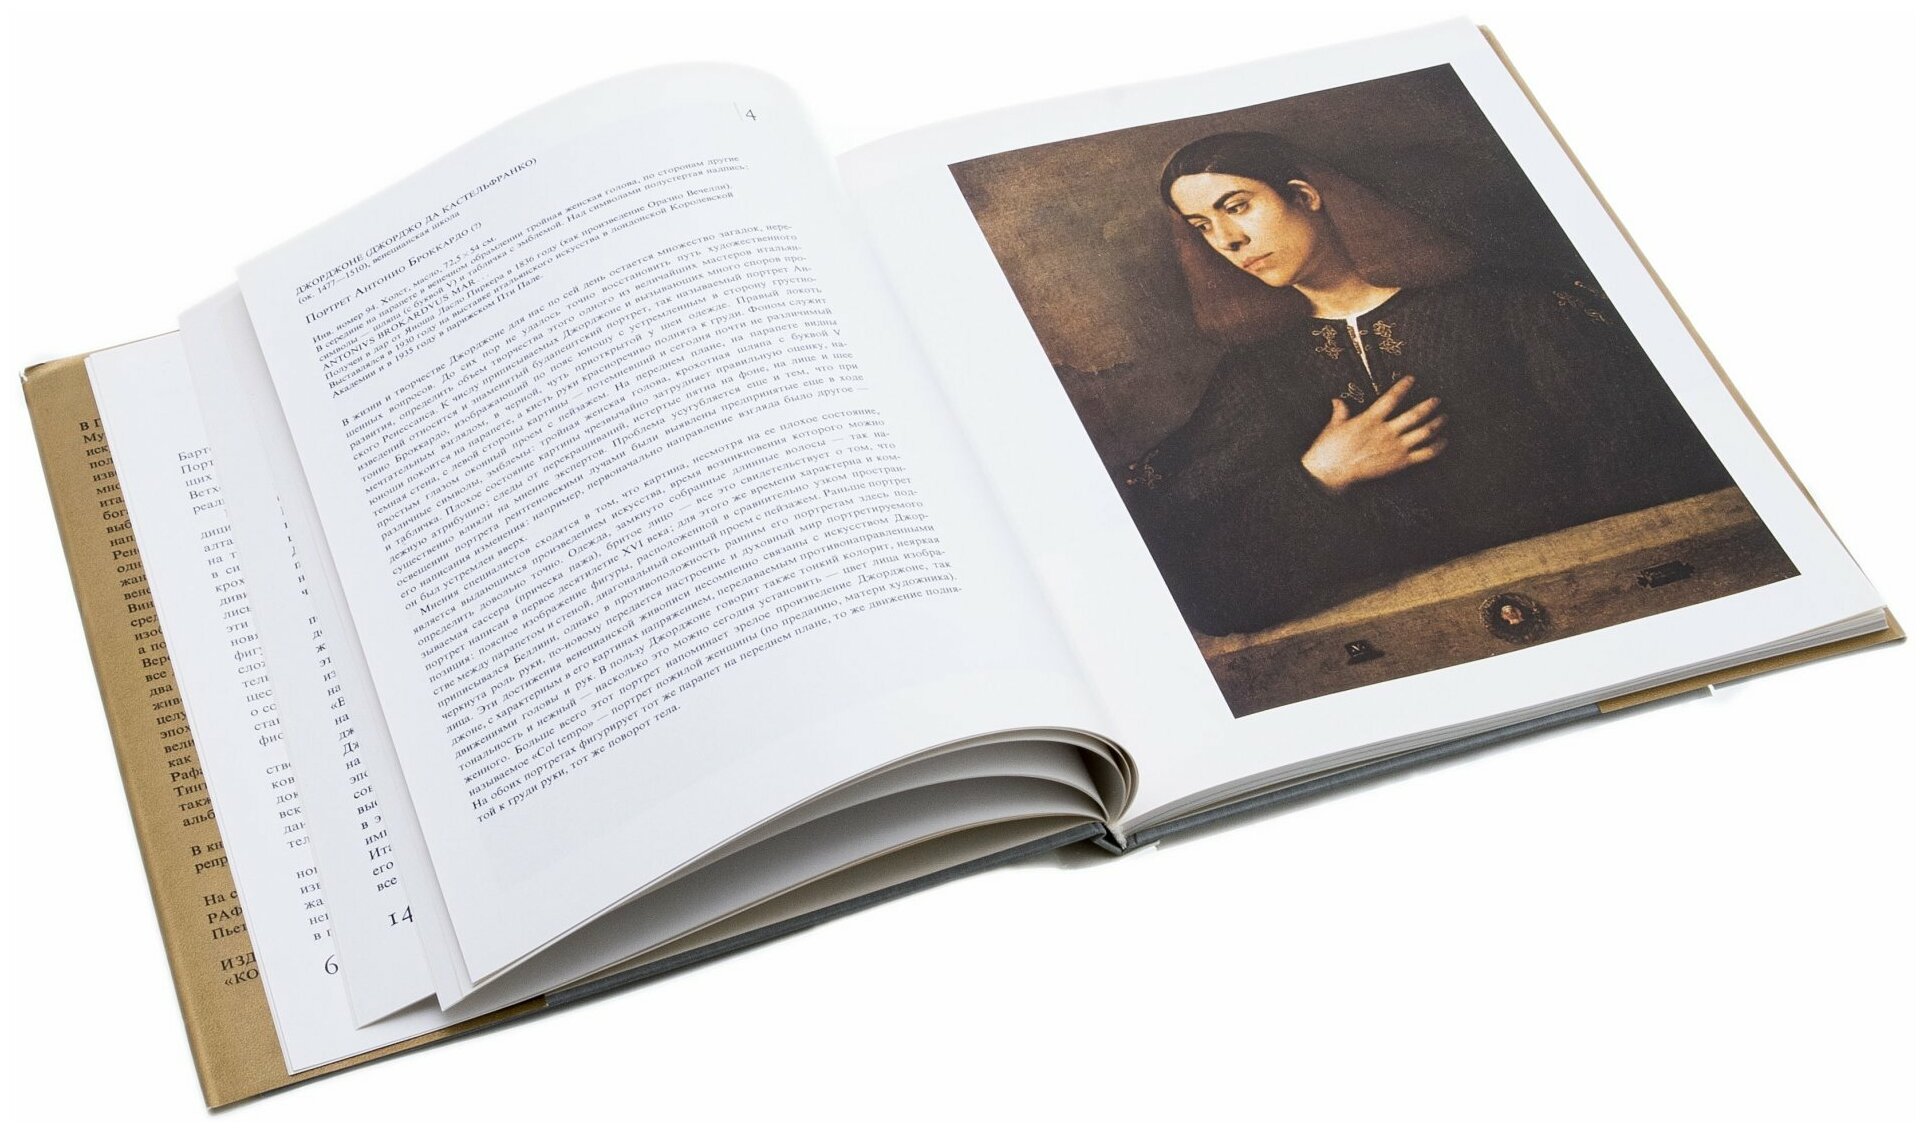 Клара Гараш "Итальянские портреты эпохи ренессанса", бумага, печать